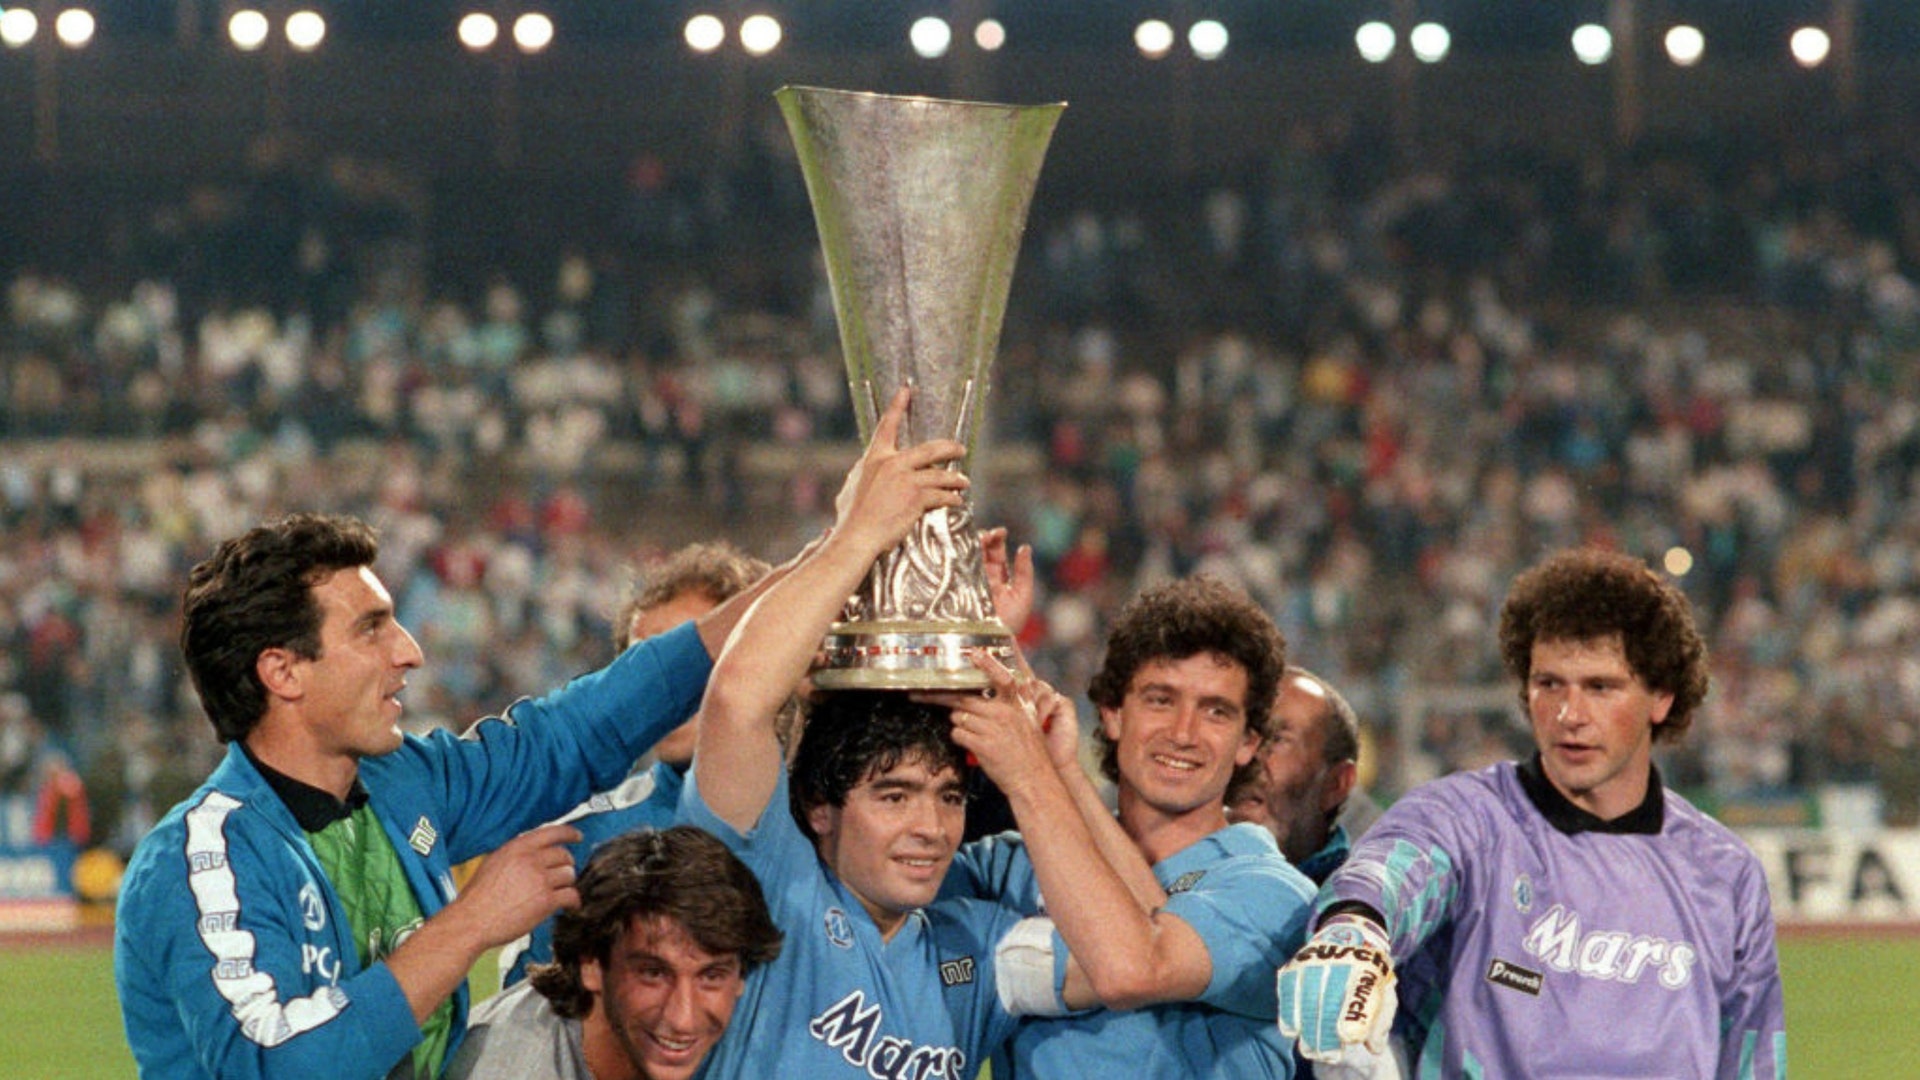 Los mejores momentos en la historia futbolística de Maradona • Canal C